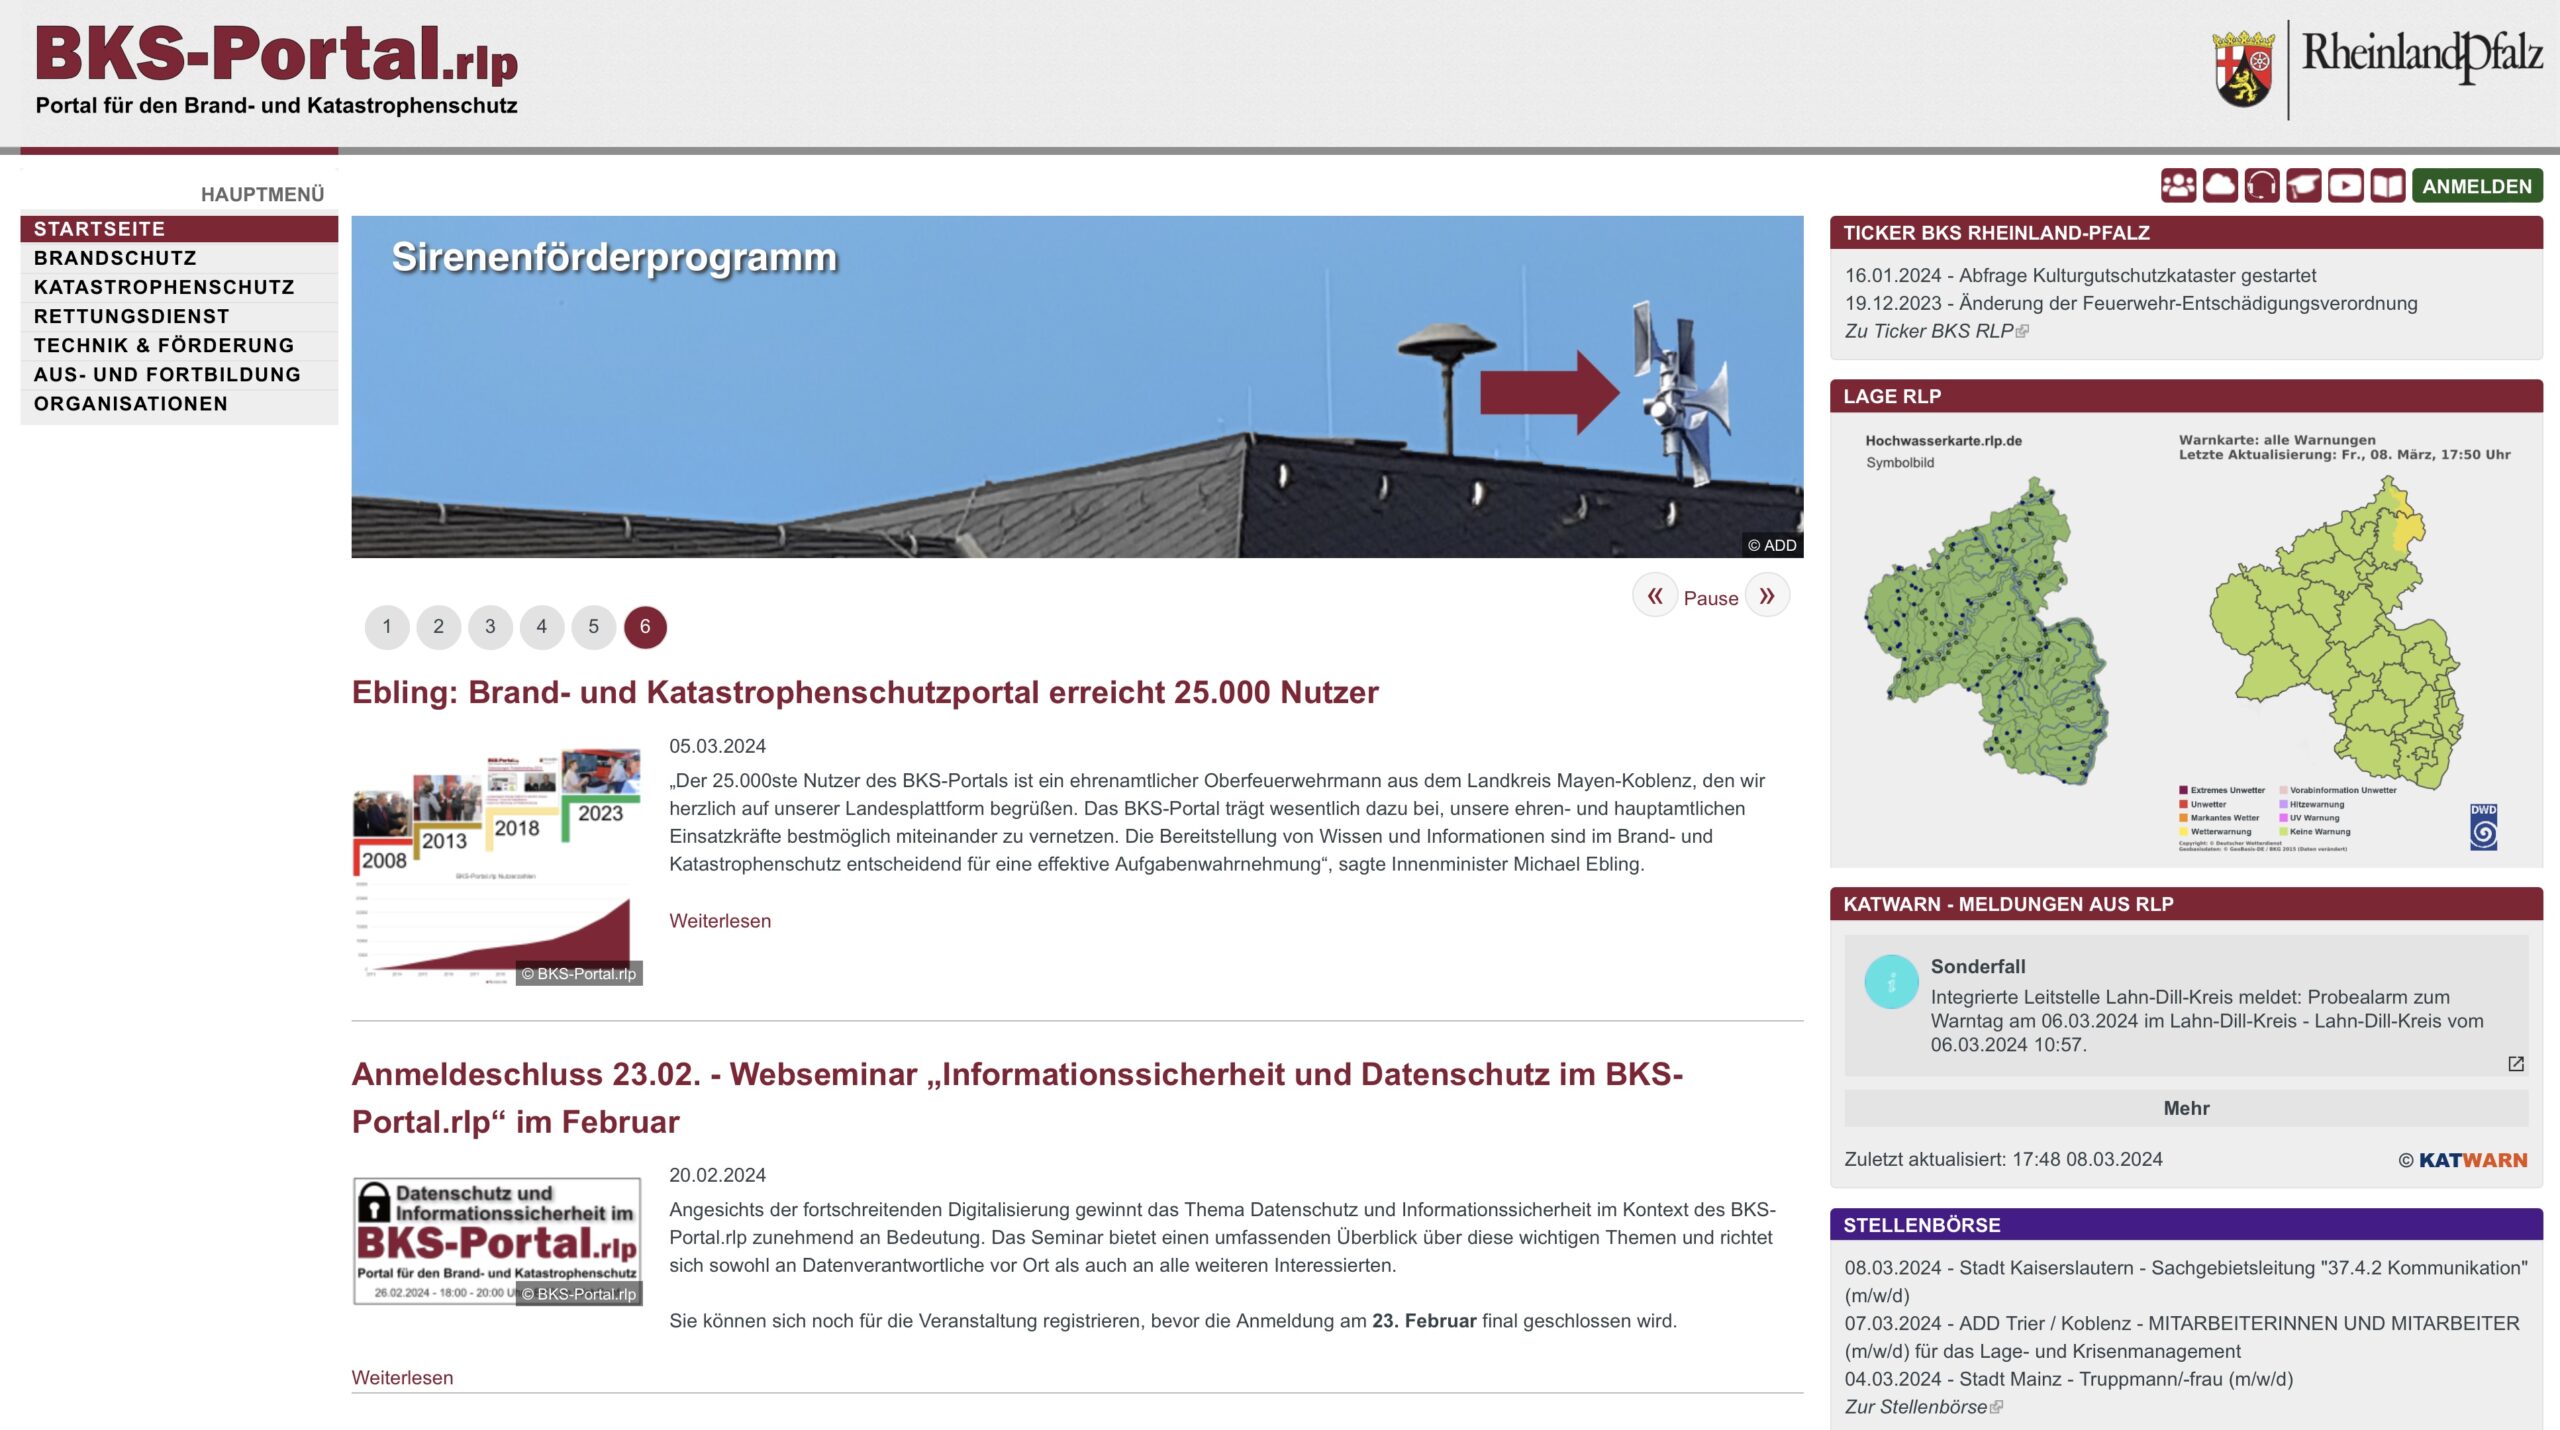 Das Bild zeigt die Startseite des Online-Portals für den Brand- und Katastrophenschutz in Rheinland-Pfalz (BKS-Portal).